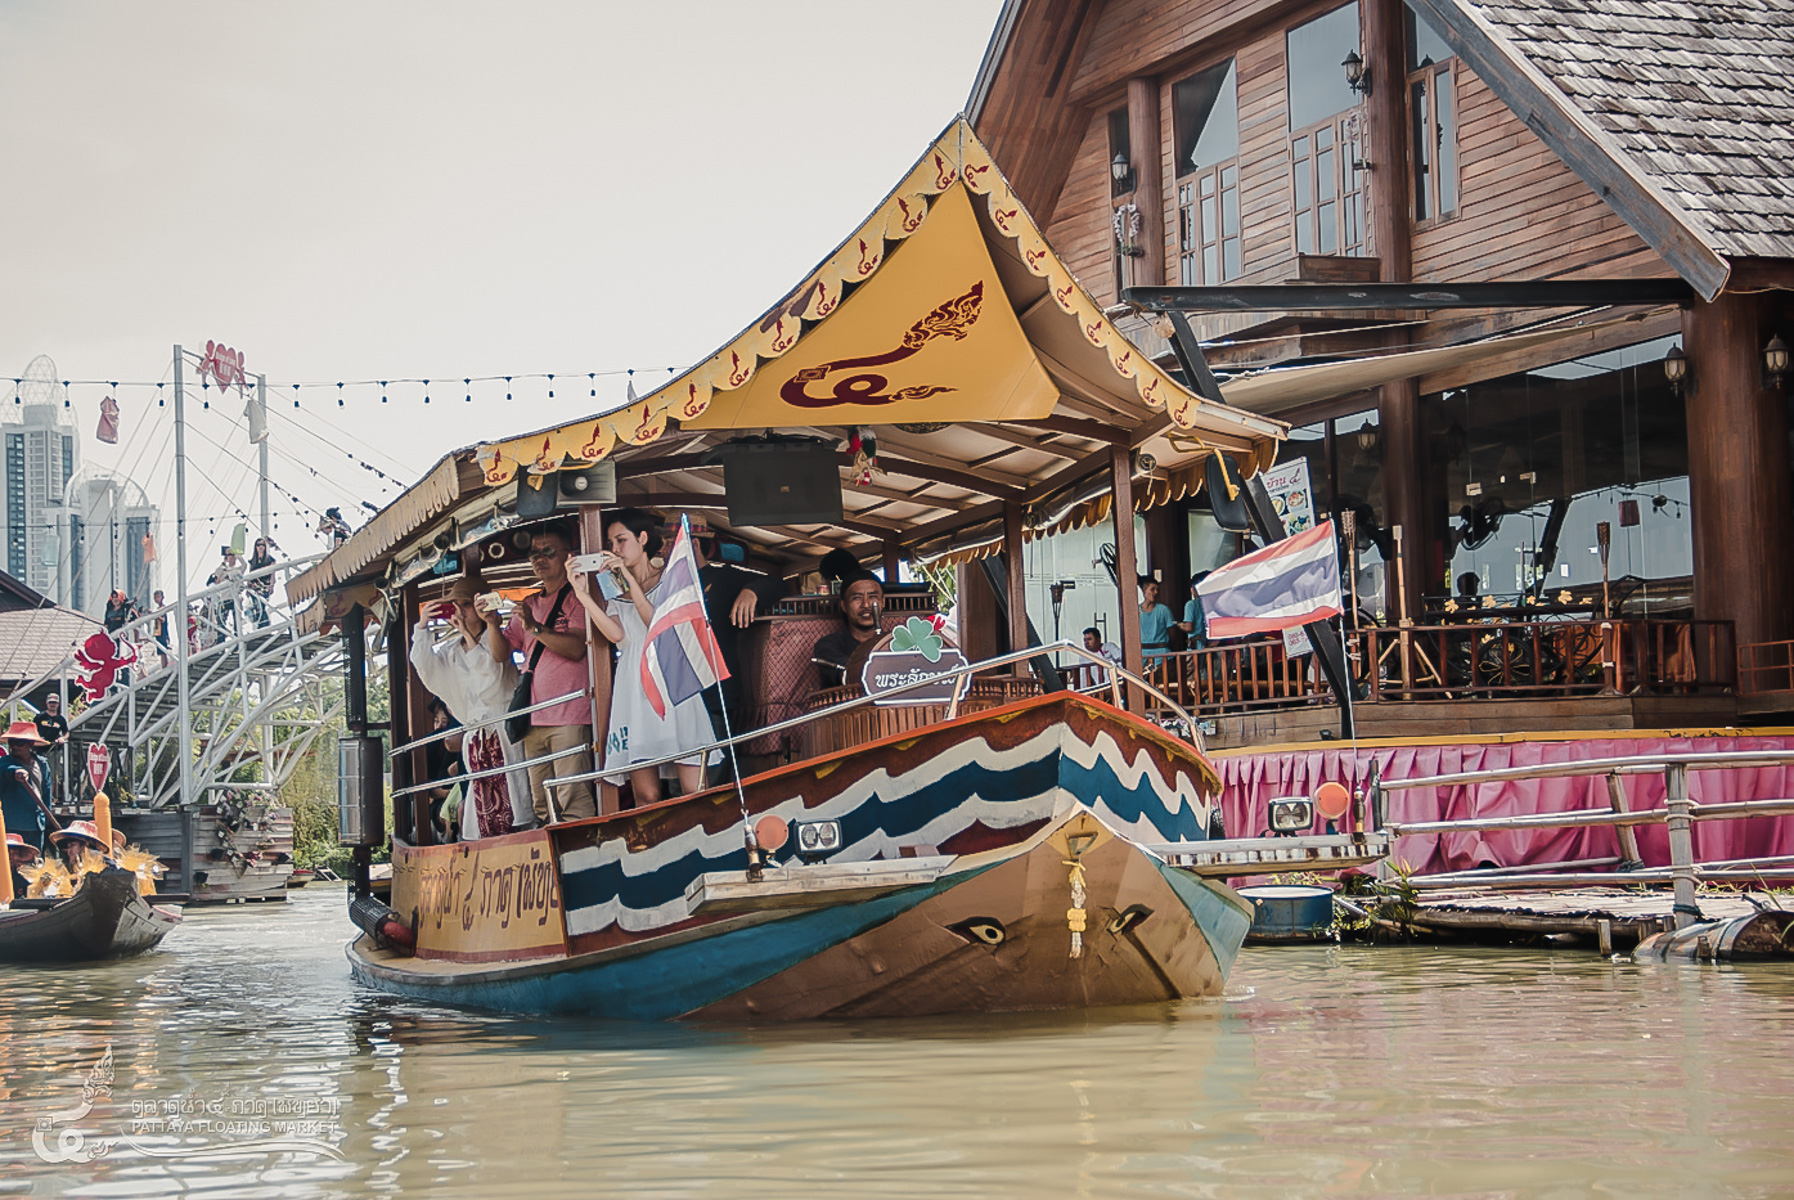 Chợ nổi Pattaya (Floating market Pattaya) - Vé vào cổng